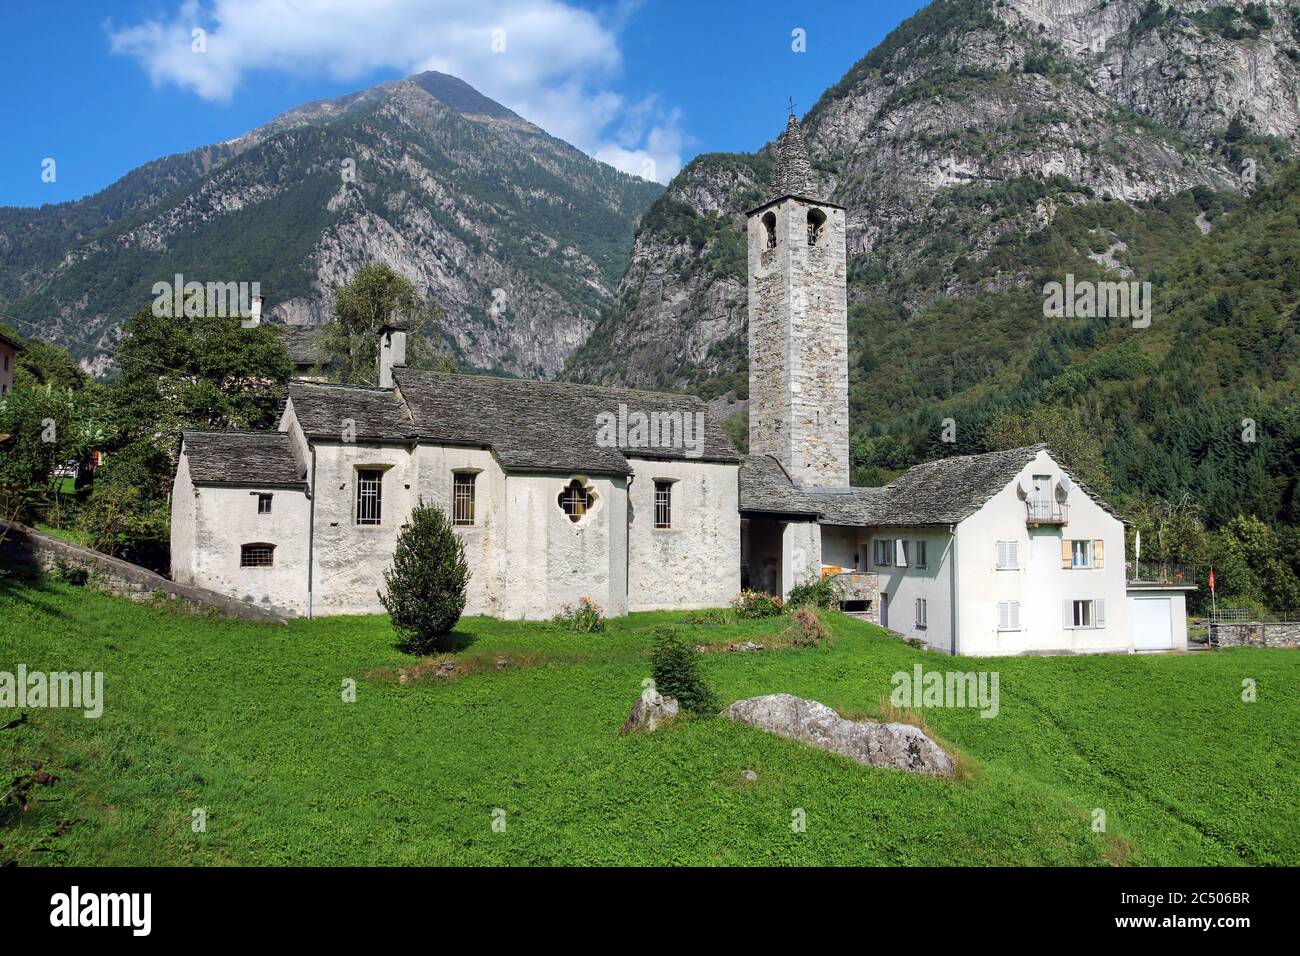 Small traditional church in Lavizzara, Vallemaggia, Ticino canton, Switzerland Stock Photo